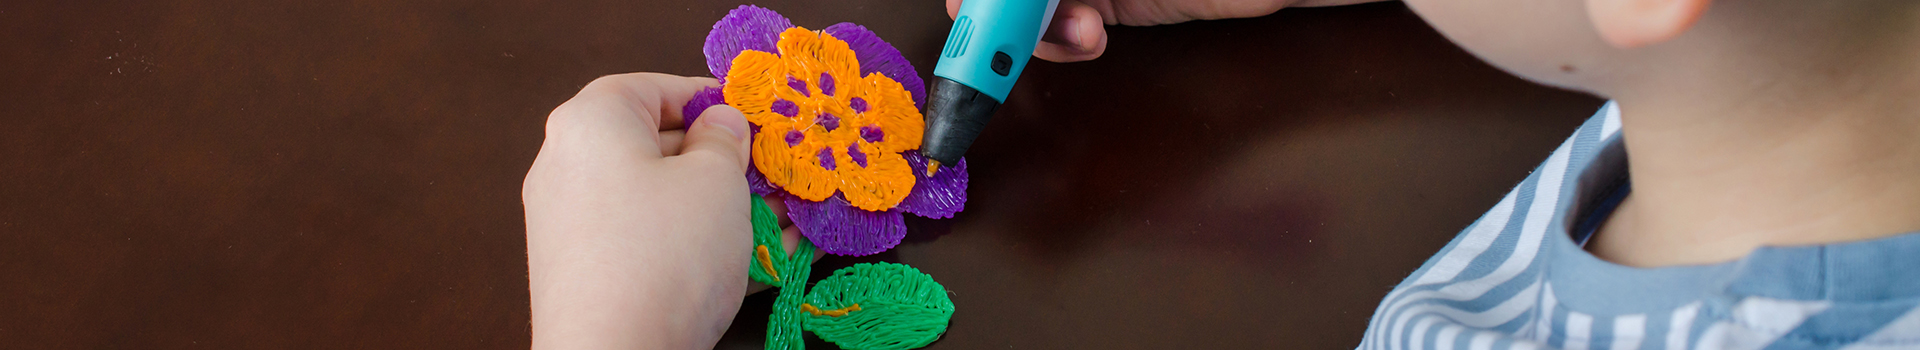 Menino usando caneta 3D.Criança feliz fazendo flor de plástico ABS colorido.